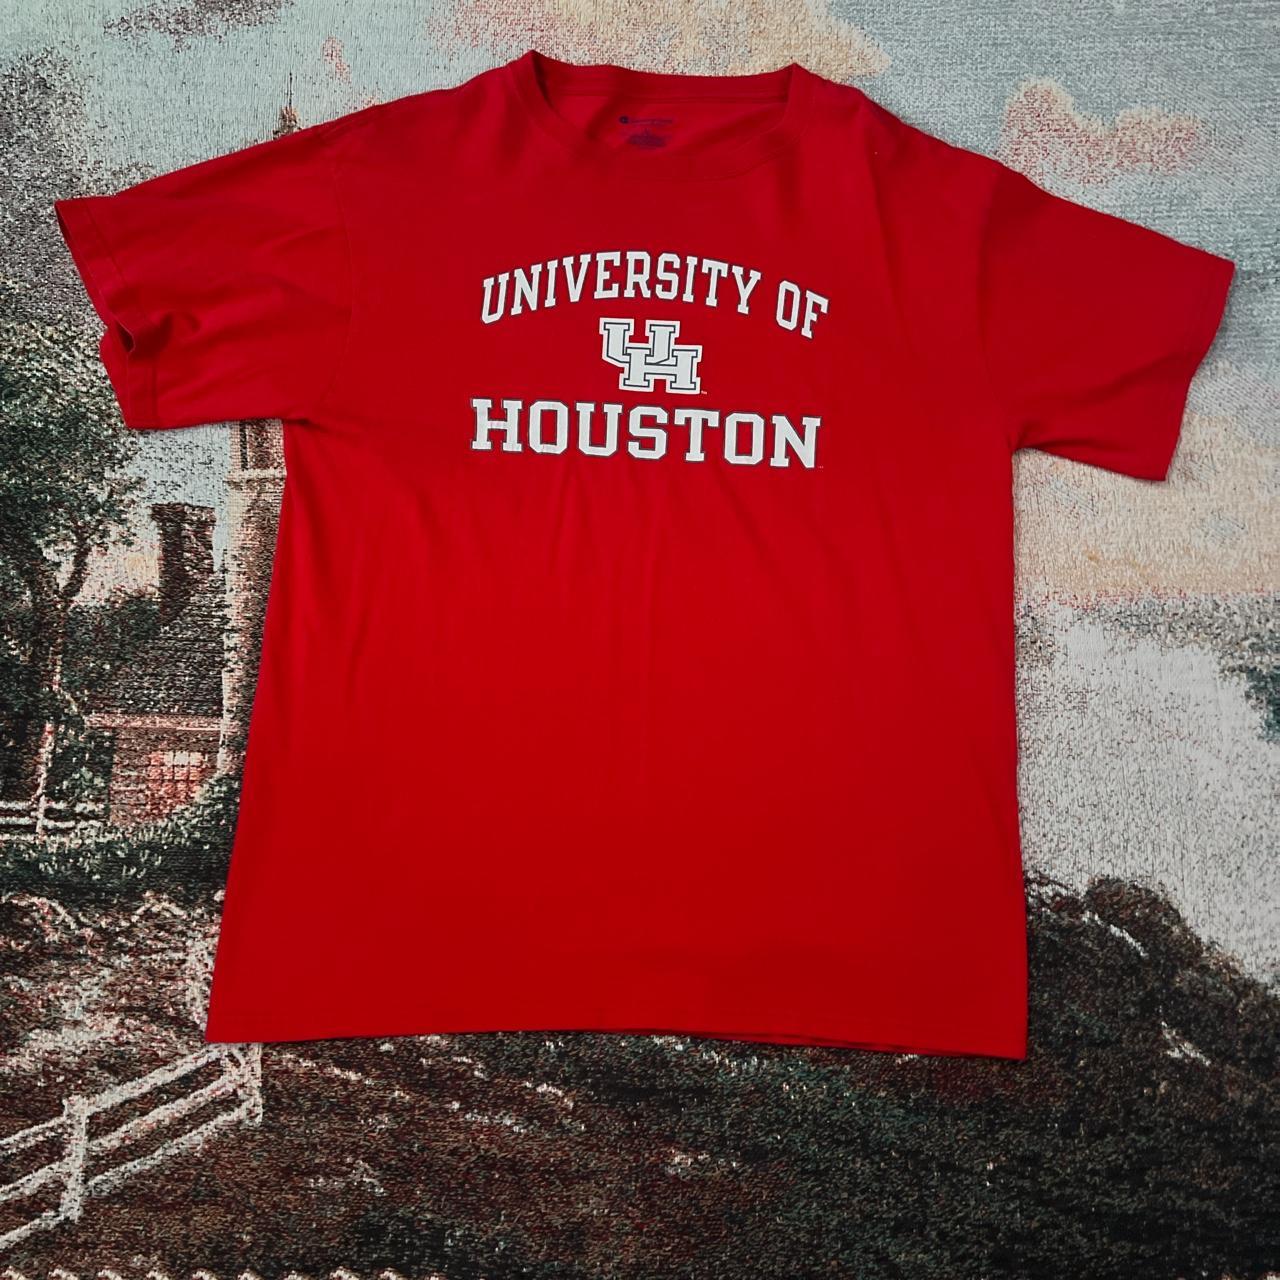 -University of Houston Shirt -Size Large -No... - Depop